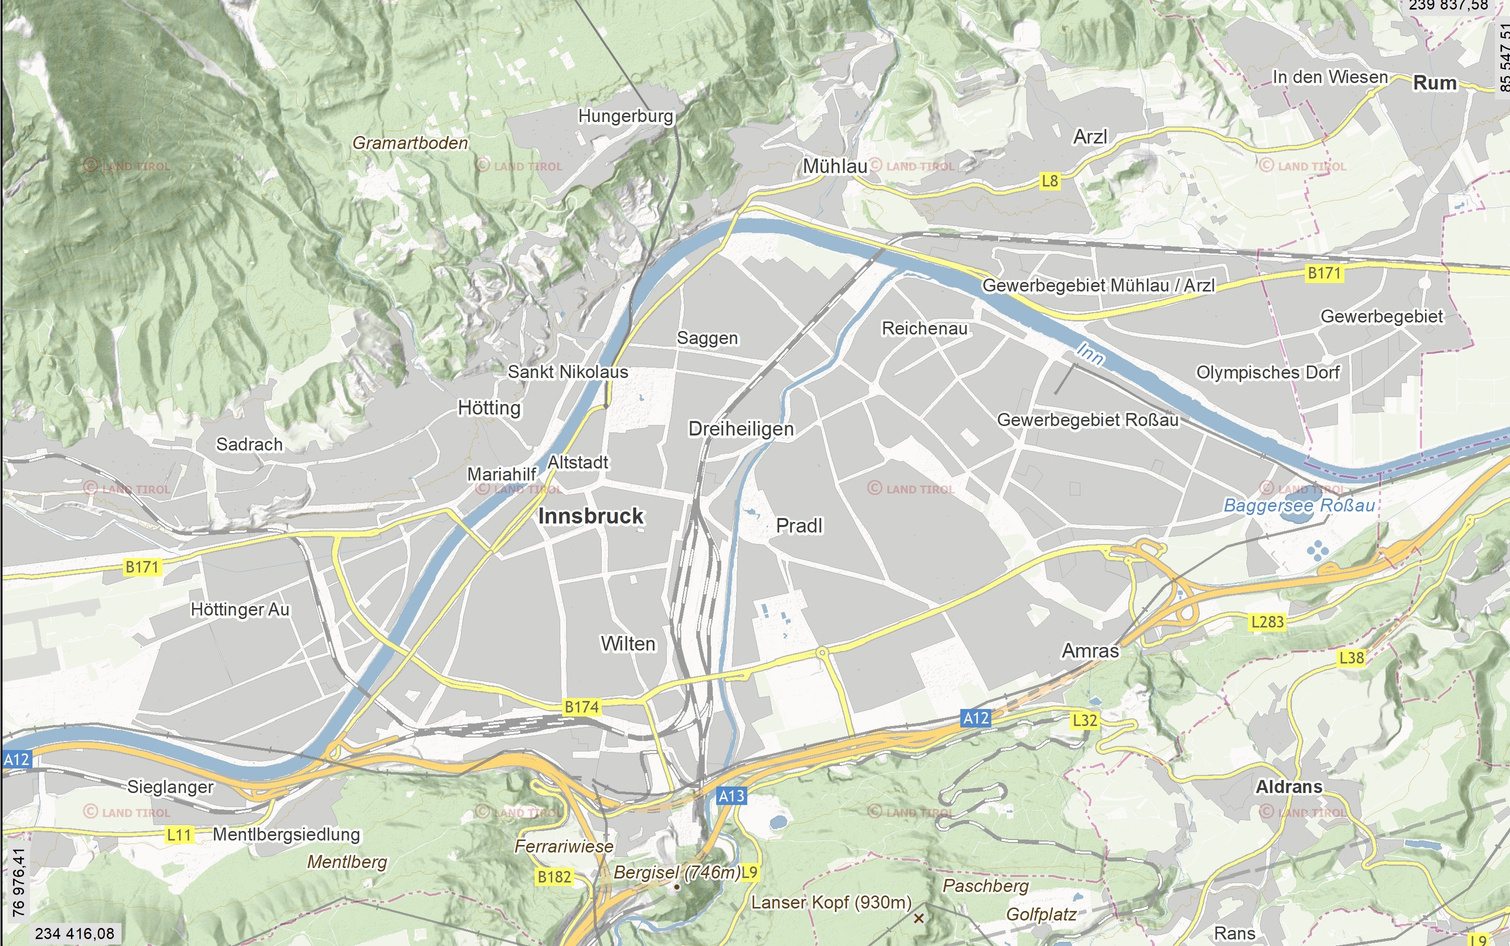 Karte von Innsbruck mit den einzelnen Veranstaltungsorten von Alpha.
